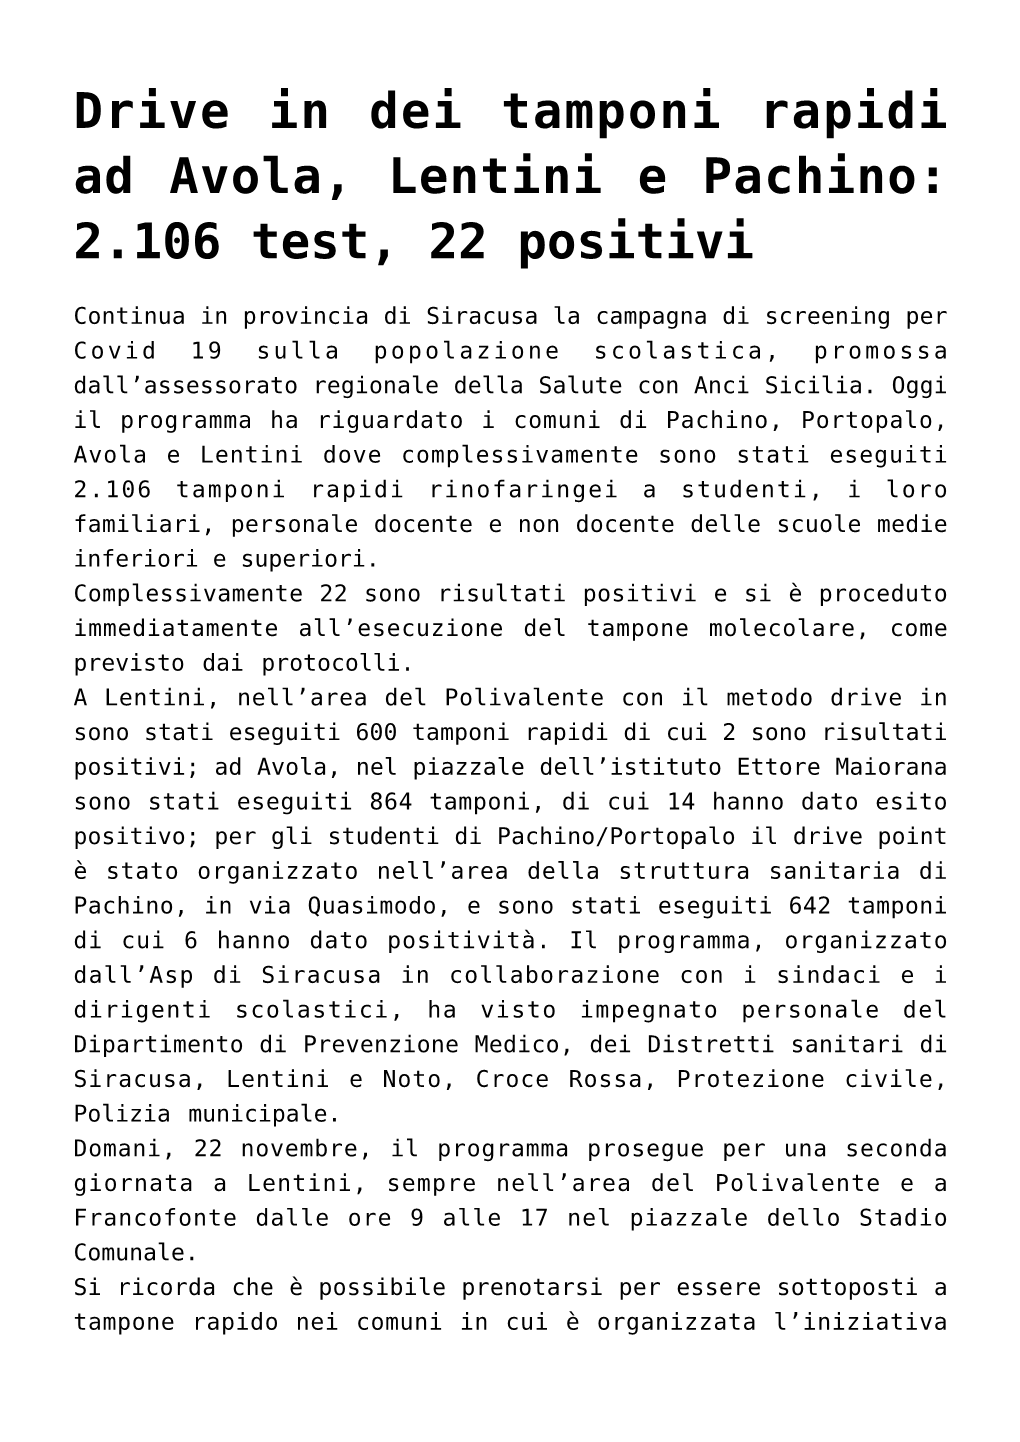 Drive in Dei Tamponi Rapidi Ad Avola, Lentini E Pachino: 2.106 Test, 22 Positivi